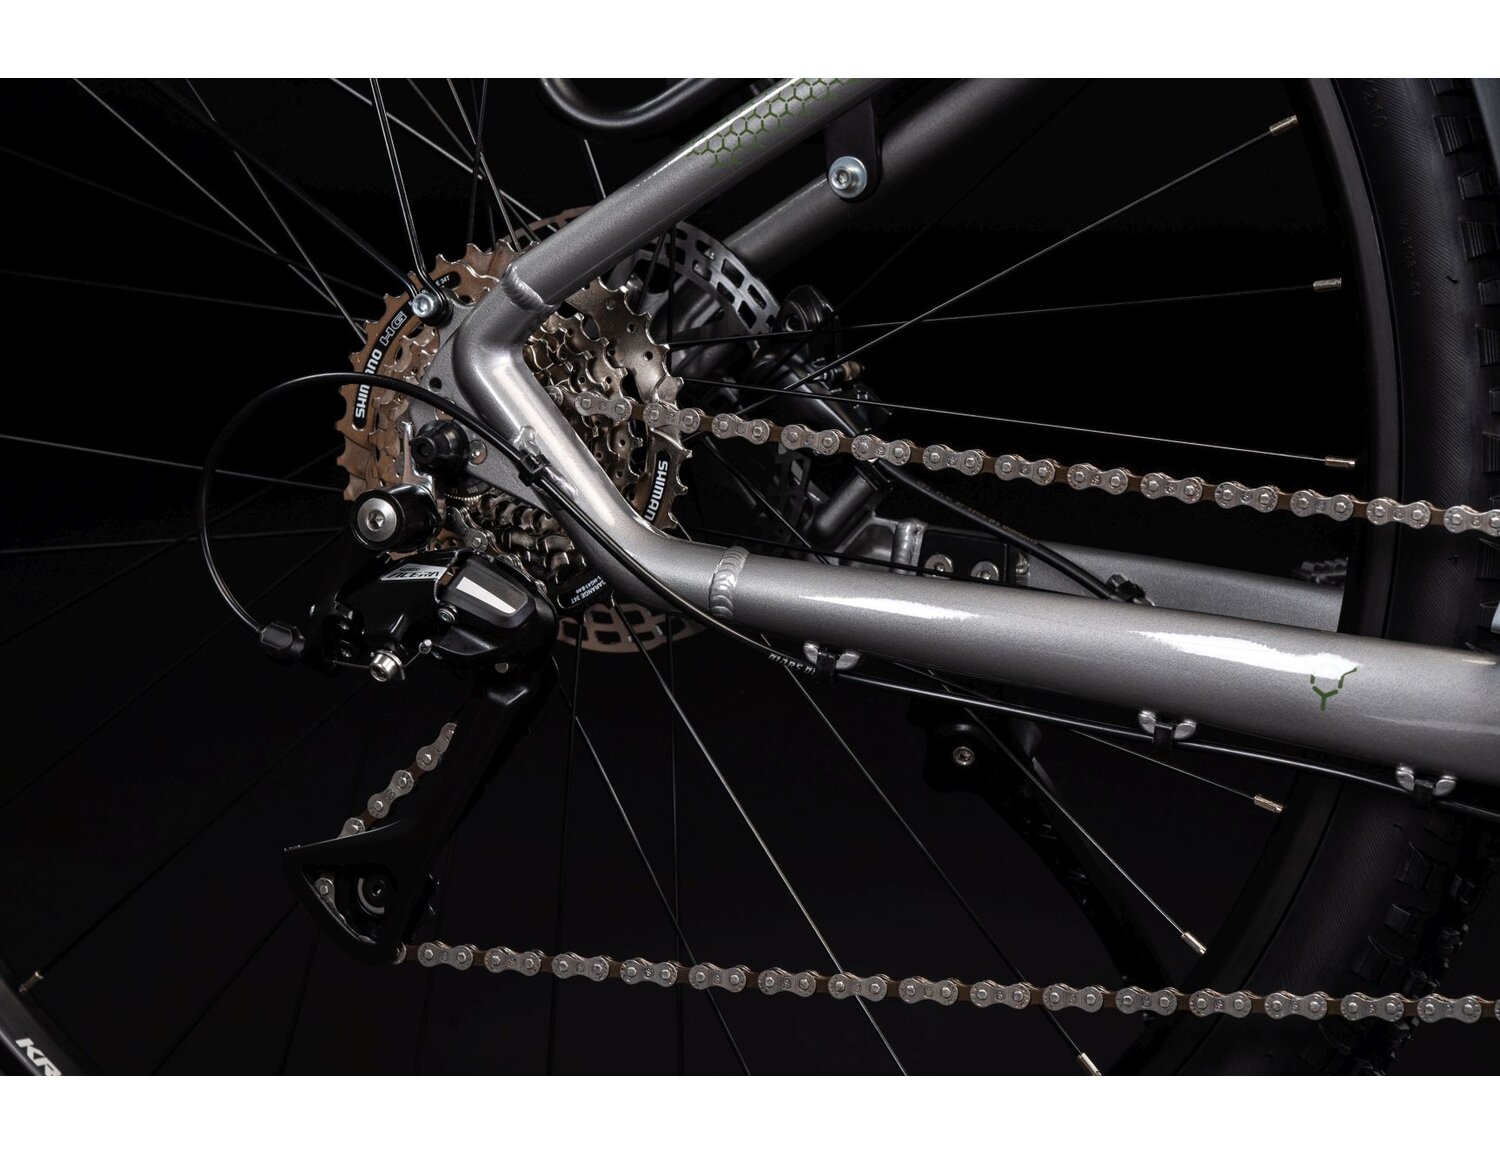  Tylna ośmiobiegowa przerzutka Shimano Acera RD M3020 oraz hydrauliczne hamulce tarczowe Shimano MT200 w rowerze górskim MTB KROSS Hexagon 4.0 EQ 